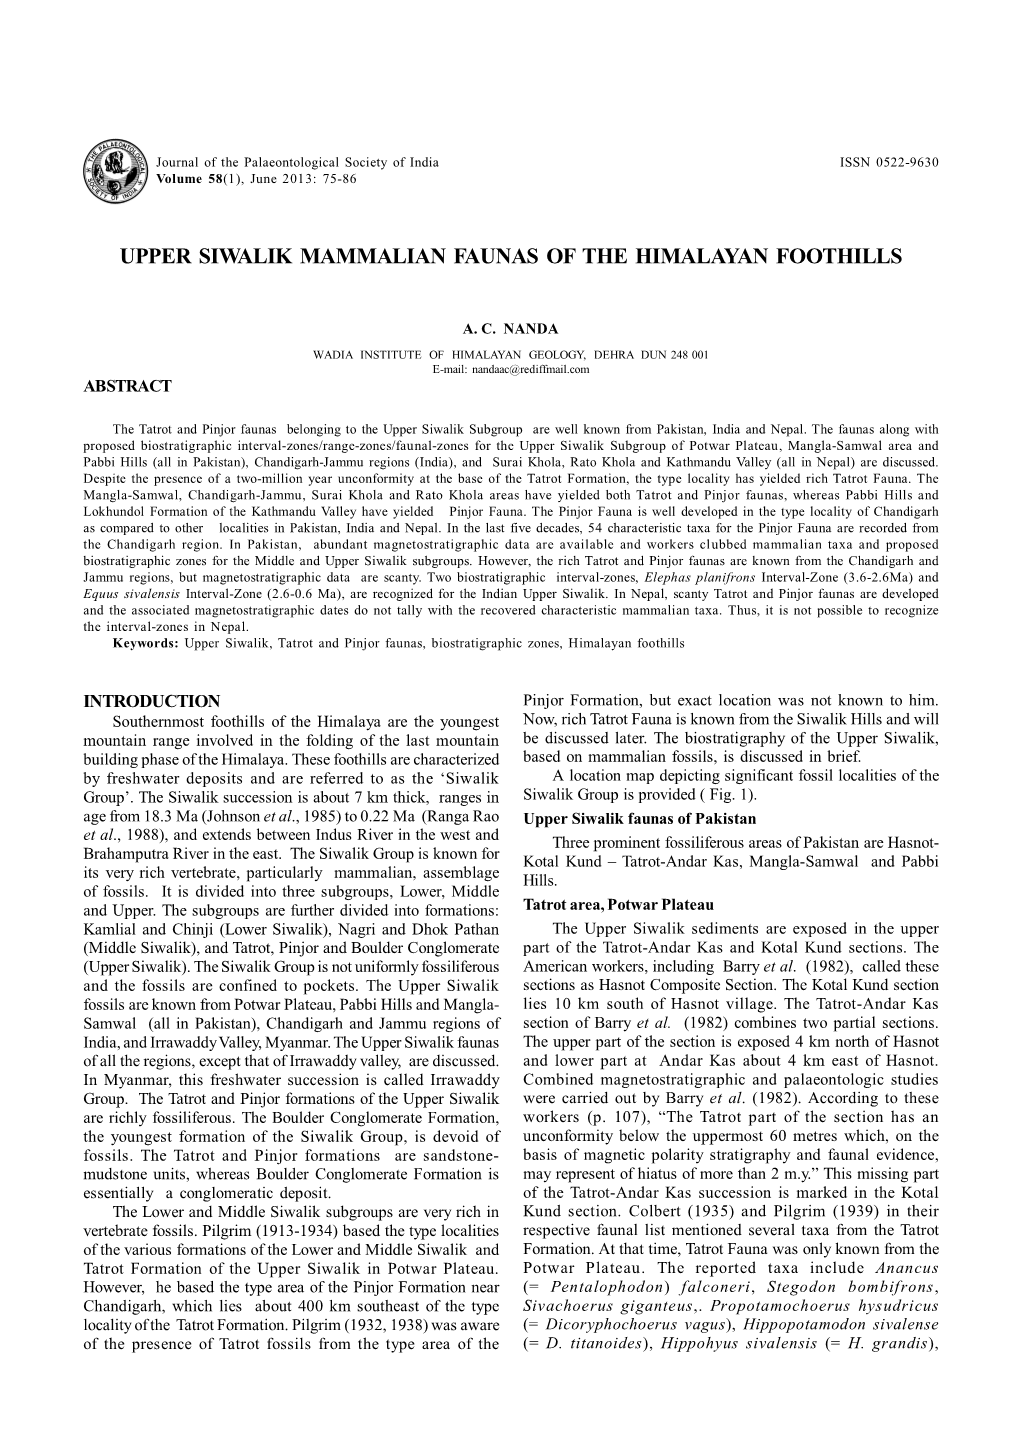 Upper Siwalik Mammalian Faunas of the Himalayan Foothills